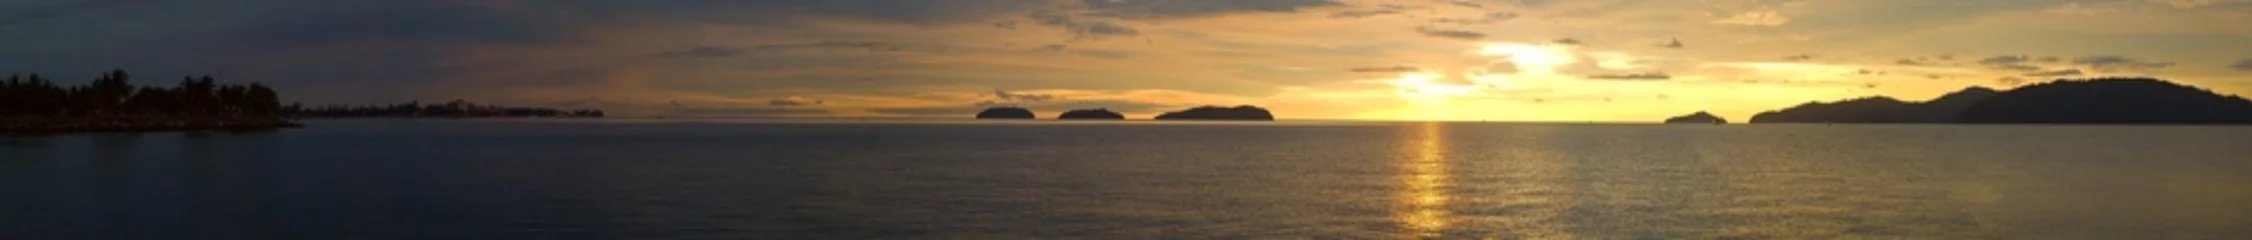 Cercles muraux Panoramique Une vue panoramique ultra large sur un océan de coucher de soleil doré